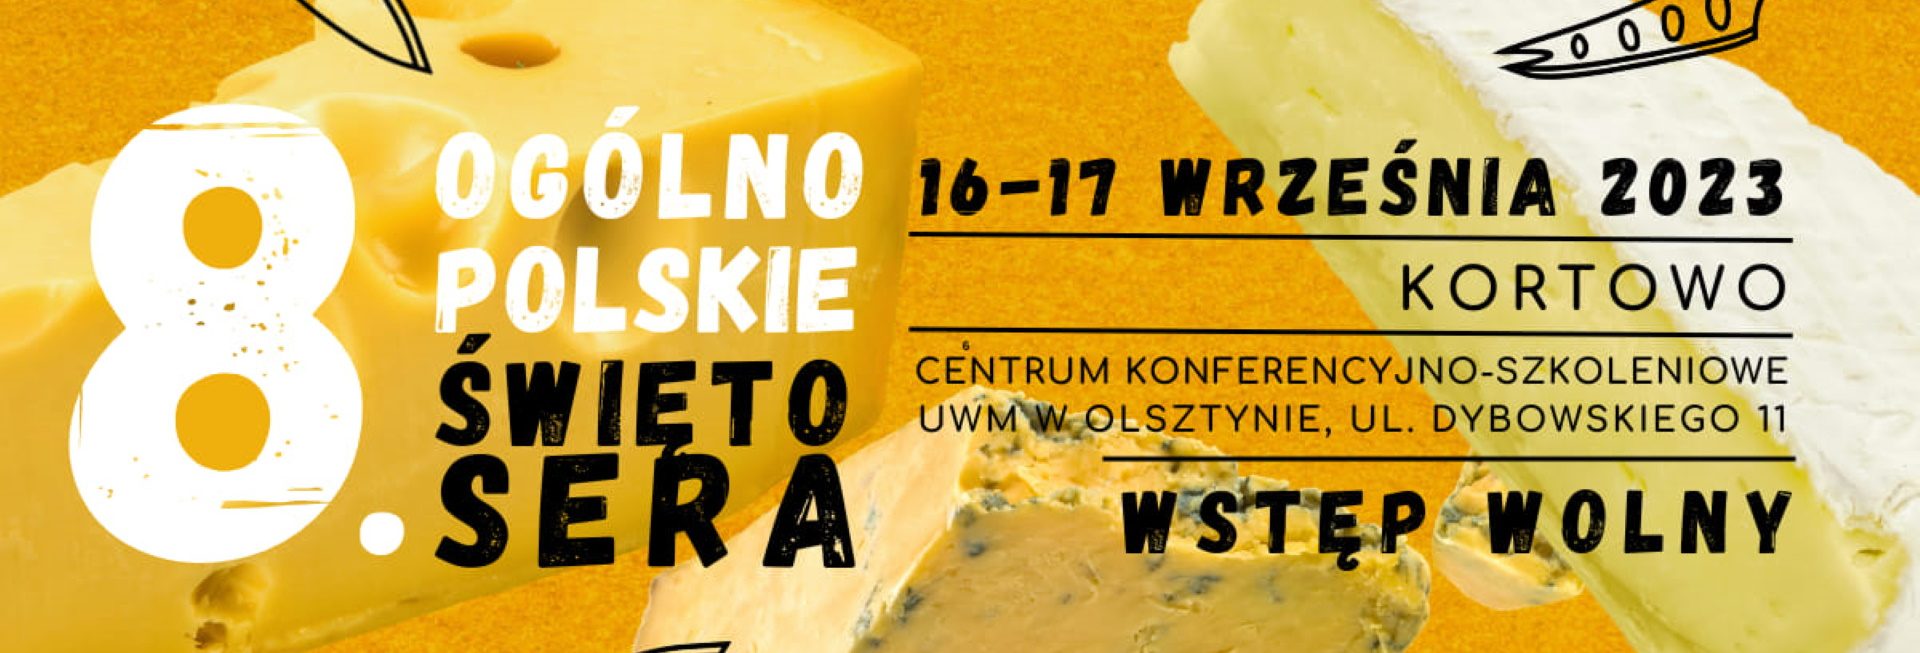 Plakat zapraszający w dniach 16-17 września 2023 r. do Olsztyna na 8. edycję Festiwalu Serów i Twarogów Polskiego Mleczarstwa - Ogólnopolskie Święto Sera Olsztyn 2023. 